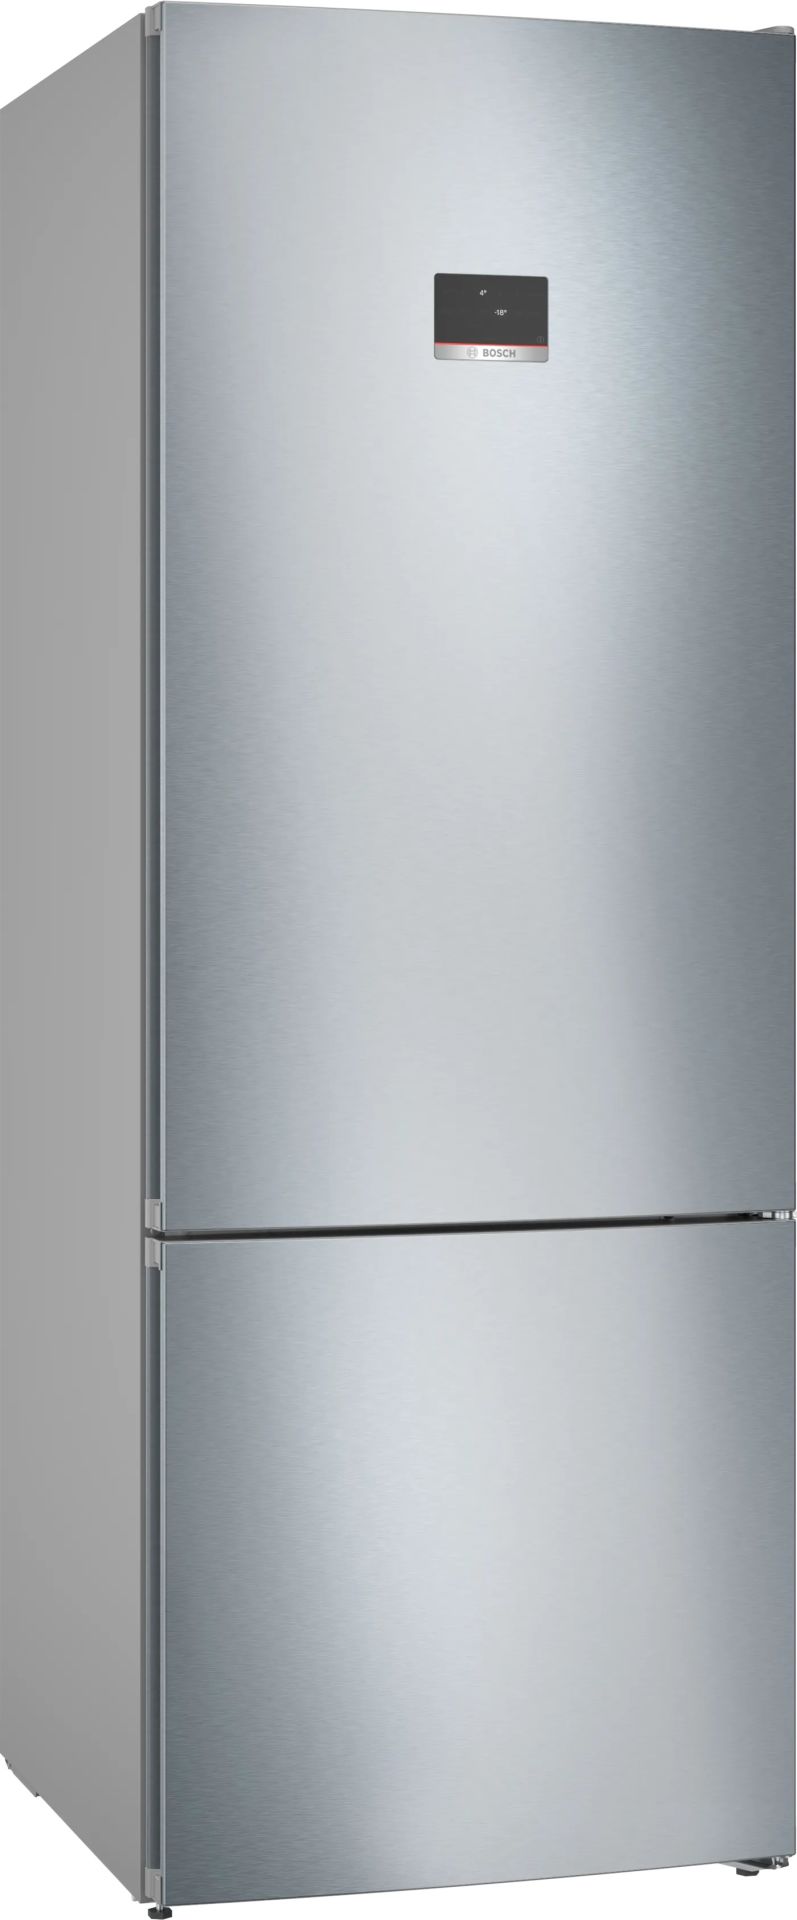 KGN56CI30U- Serie | 4 Alttan Donduruculu Buzdolabı 193 x 70 x 80  cm Siyah  A++ Paslanmaz çelik (parmak izi önleyici)